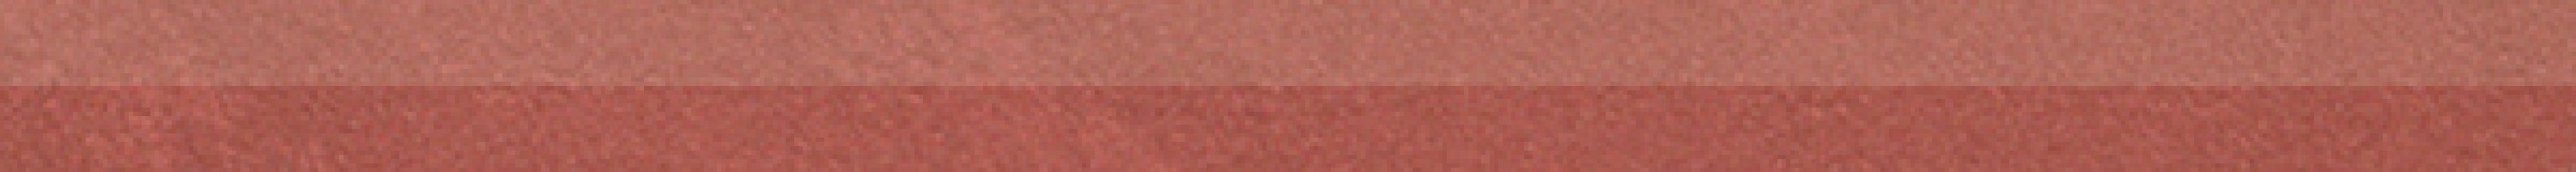 Бордюр Fap Ceramiche Color Now Marsala Spigolo 1x30.5 fMR6